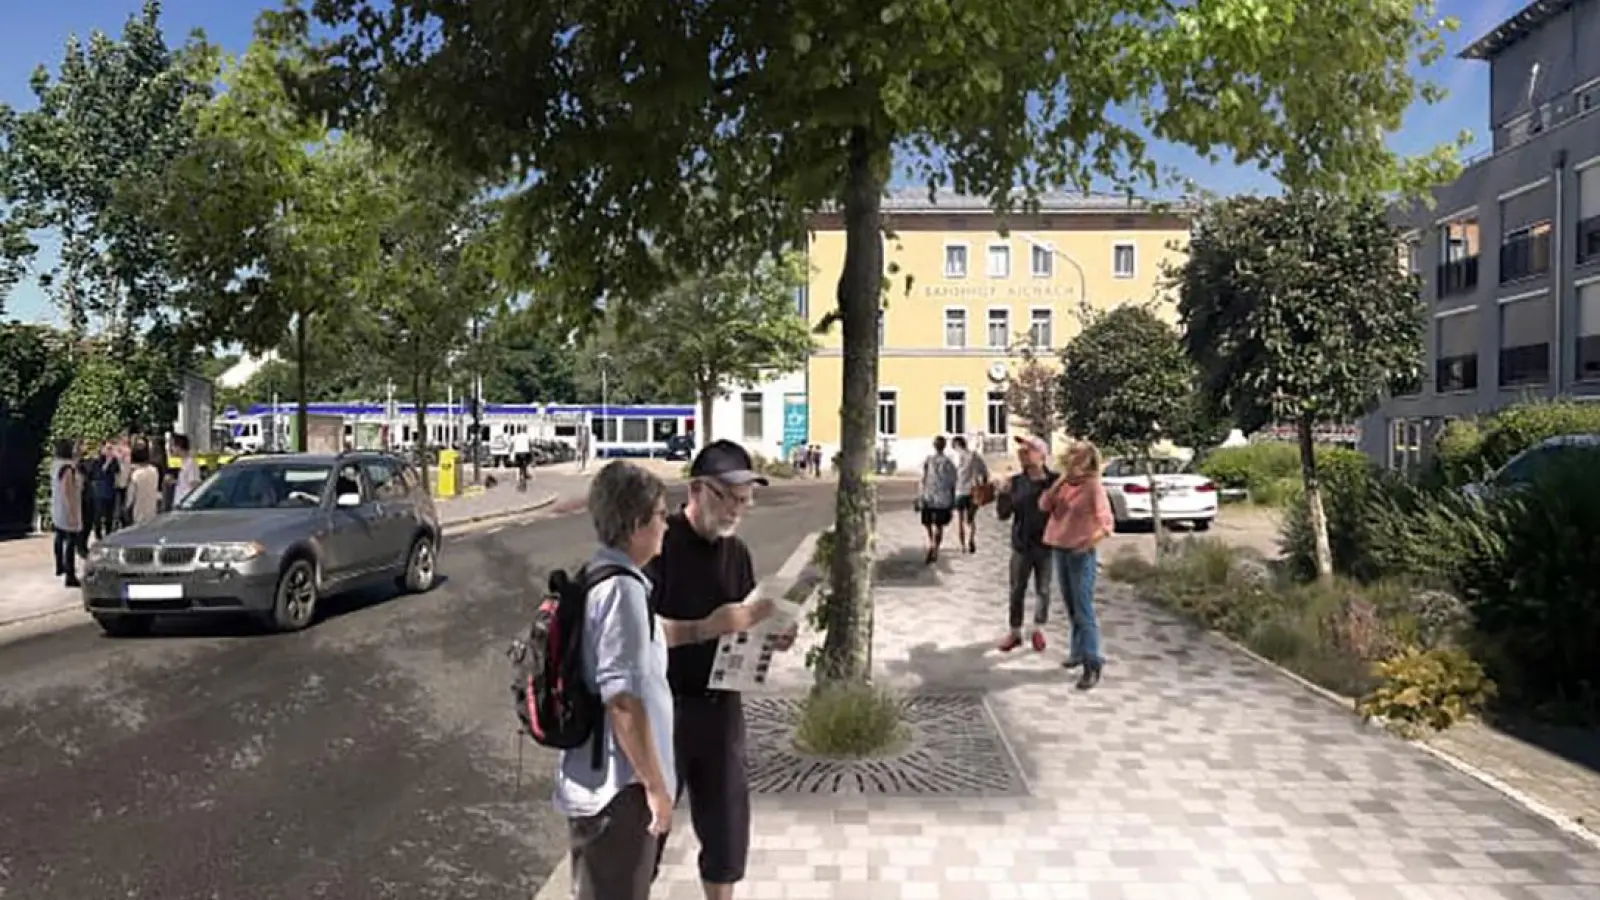 Pflasterflächen, Grünbereiche, Sitzgelegenheiten: So könnte die Bahnhofstraße in Aichach nach dem Ausbau aussehen. (Grafik: Ingenieurbüro Mayr/Landschaftsplaner Brugger)